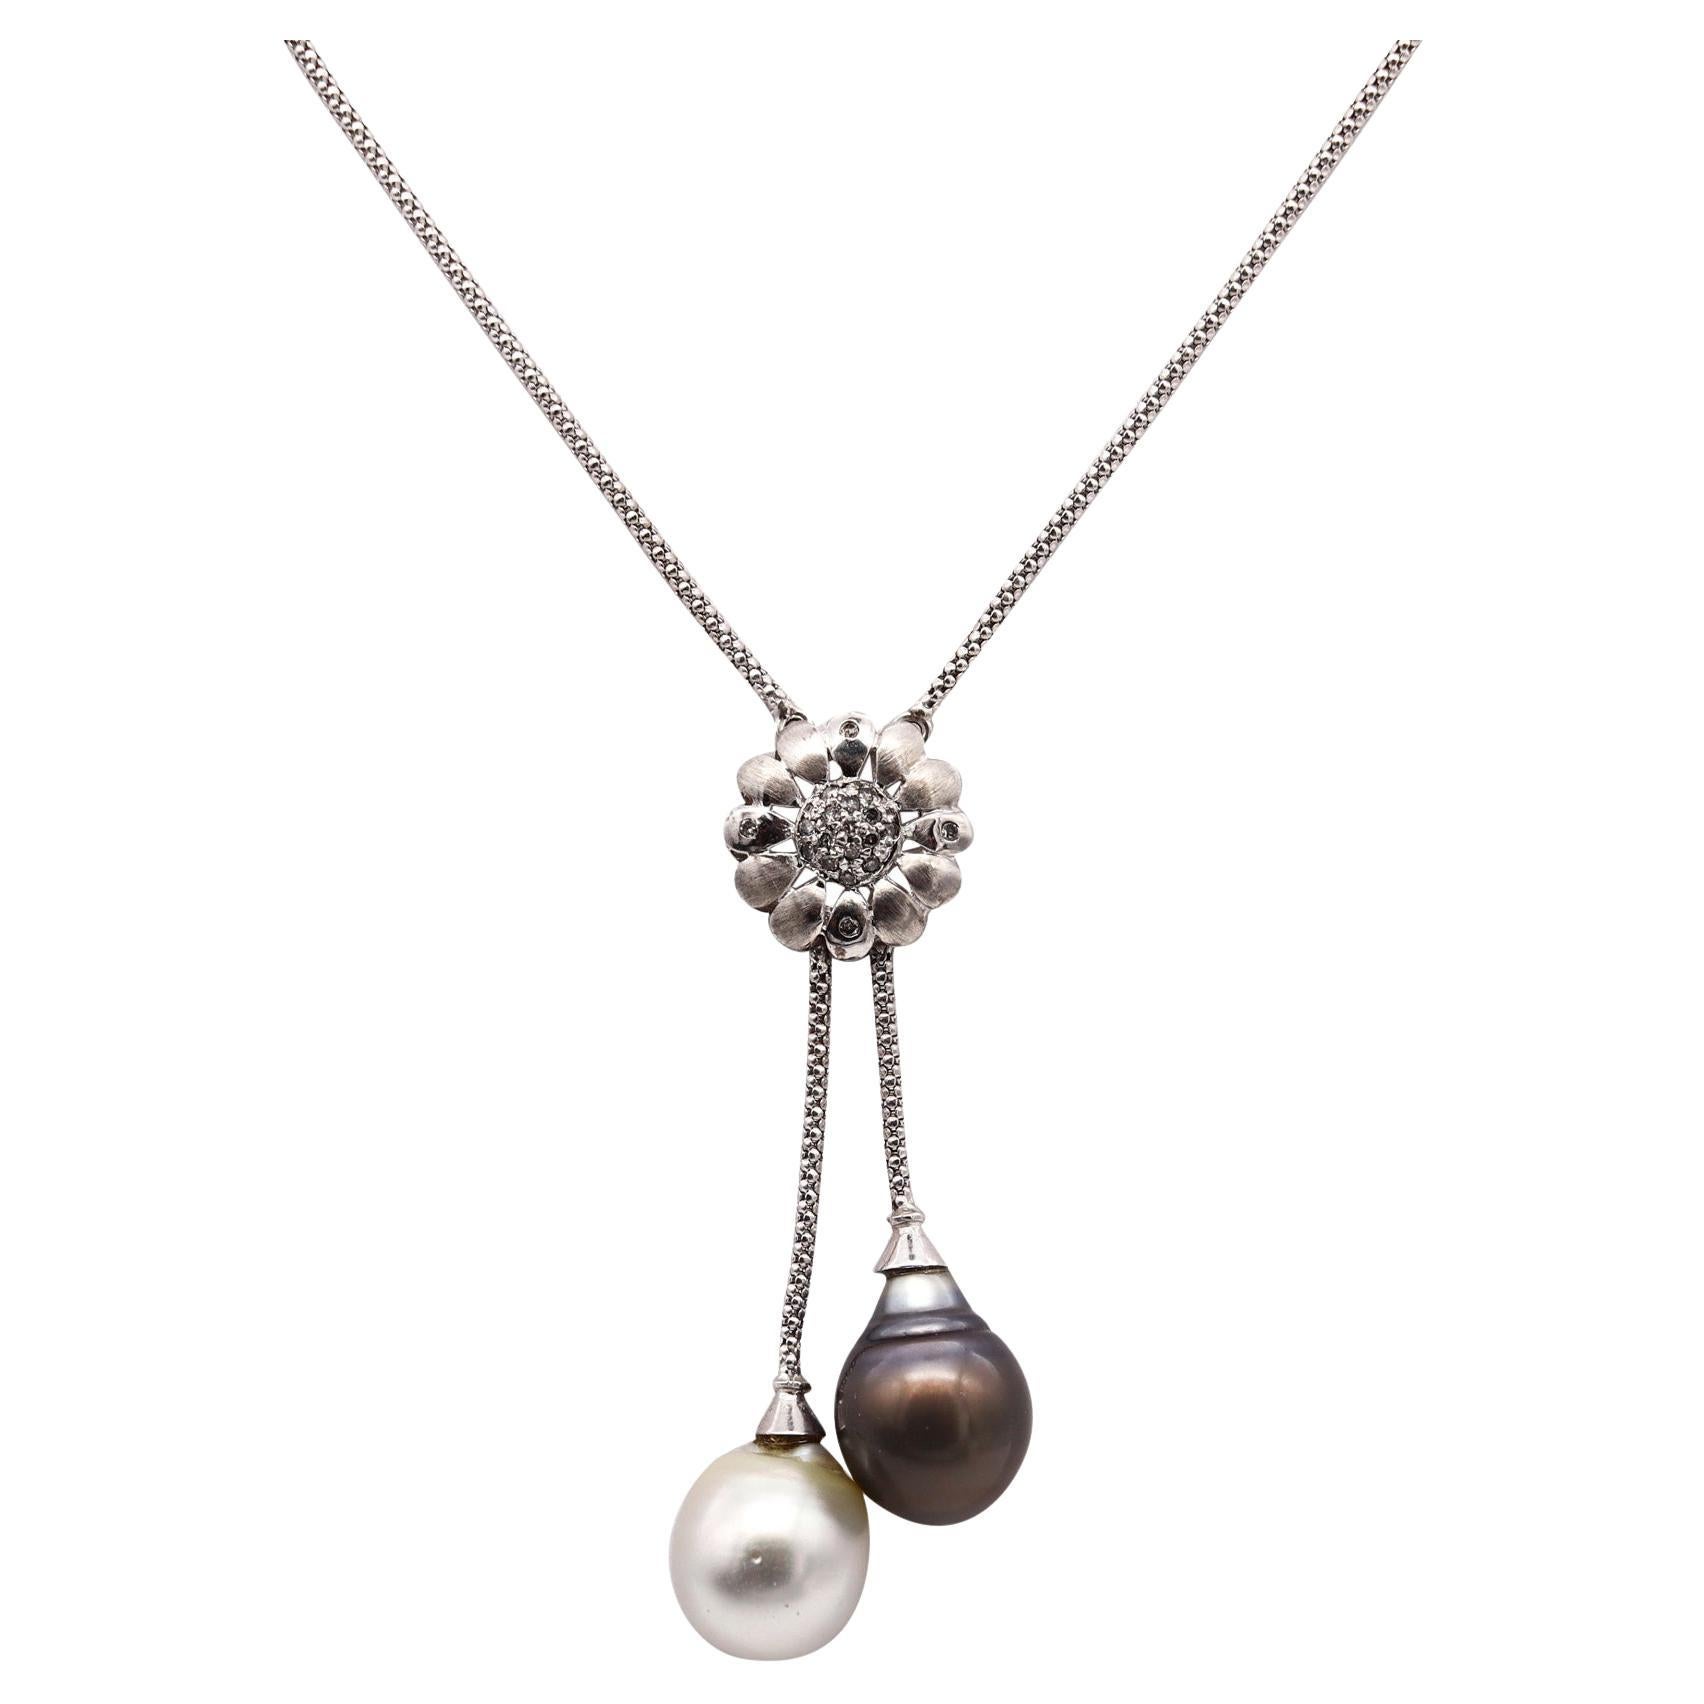 UnoAerre Collier Lariat en or 18 carats avec diamants, perles blanches et noires des mers du Sud